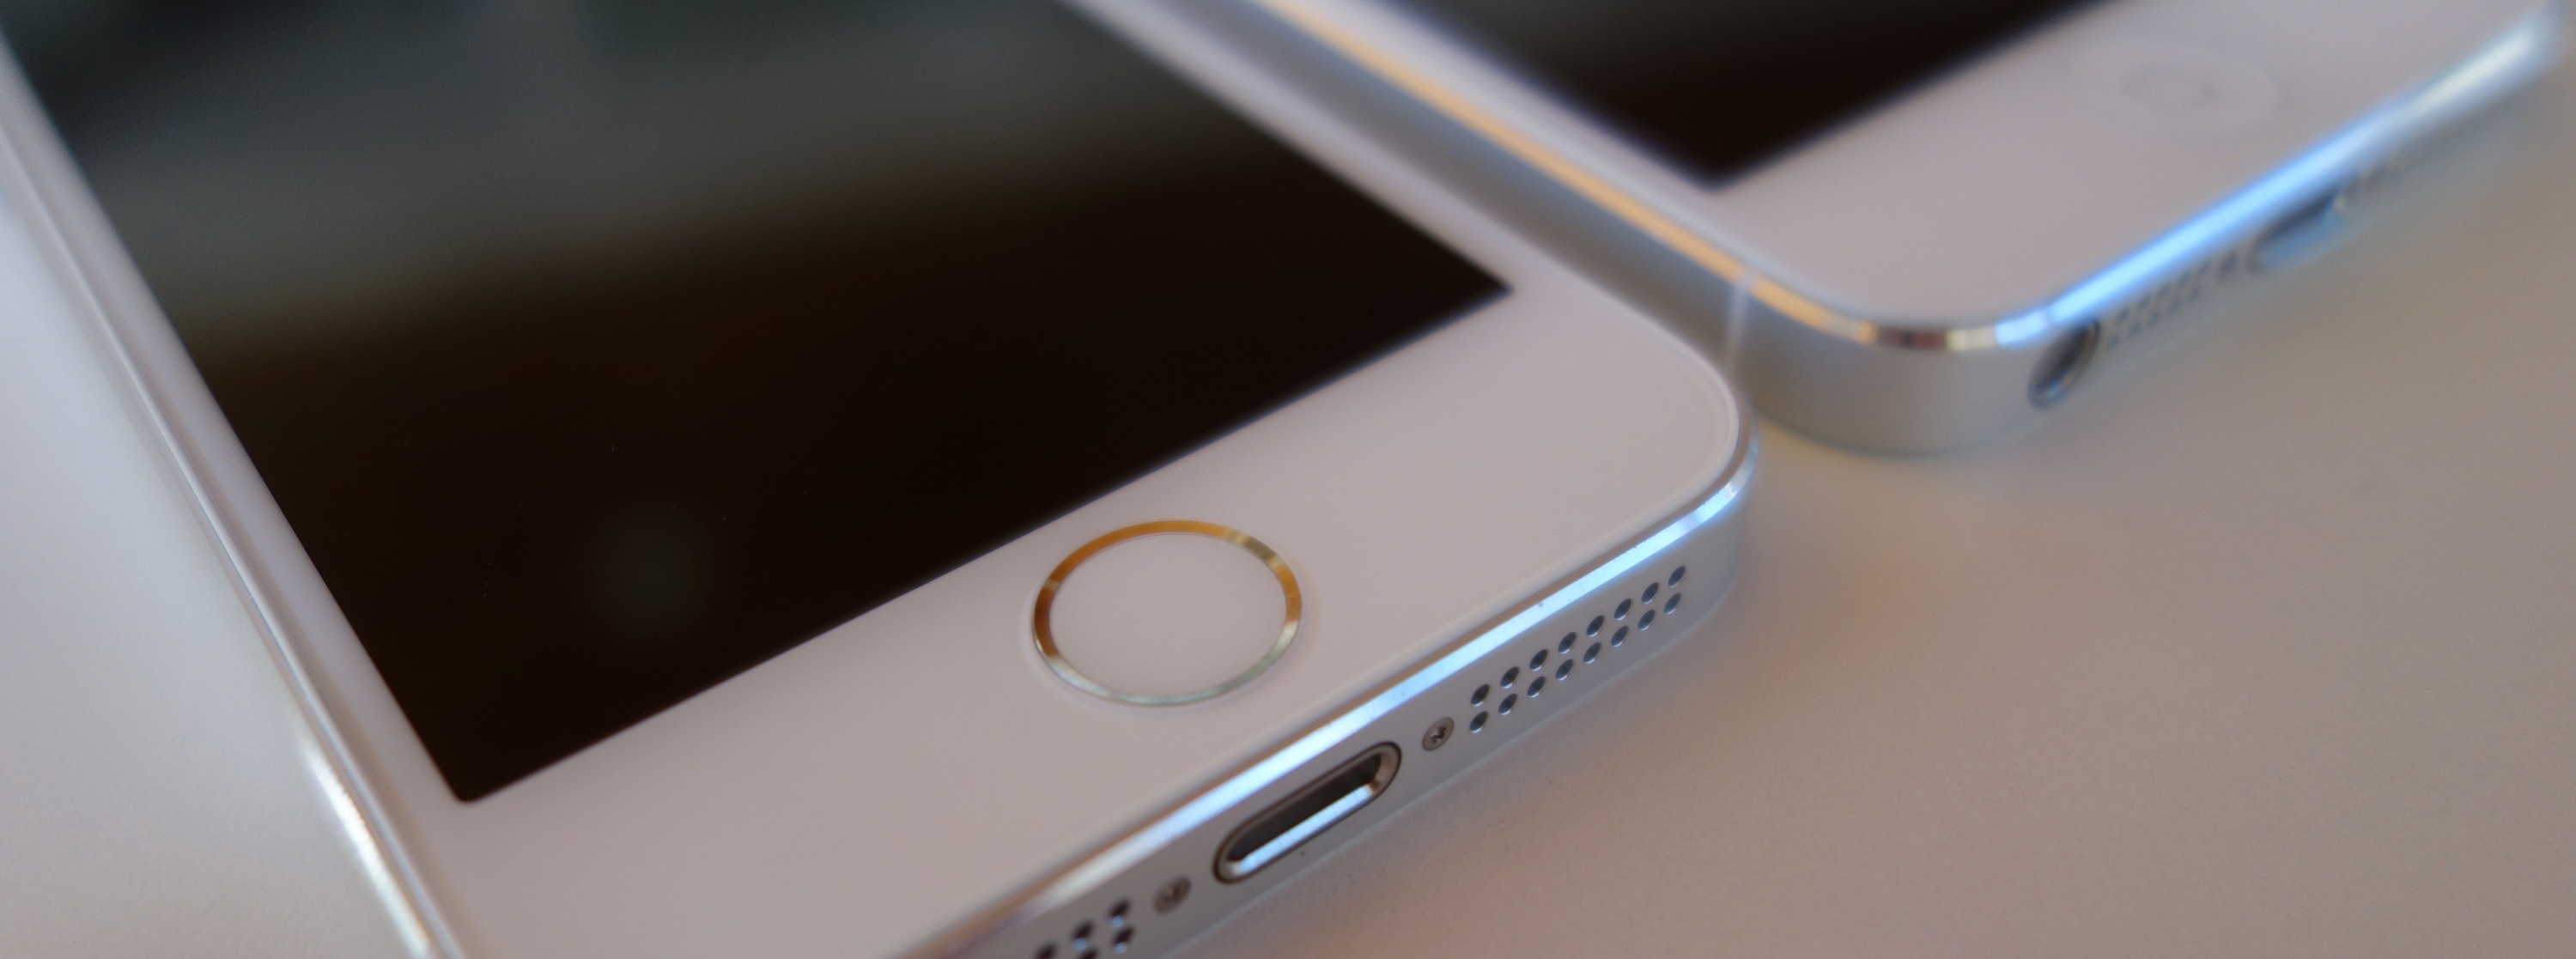 どこが変わった Iphone 5sホワイトとiphone 5ホワイト シルバーの細部を比較してみた ガジェットショット